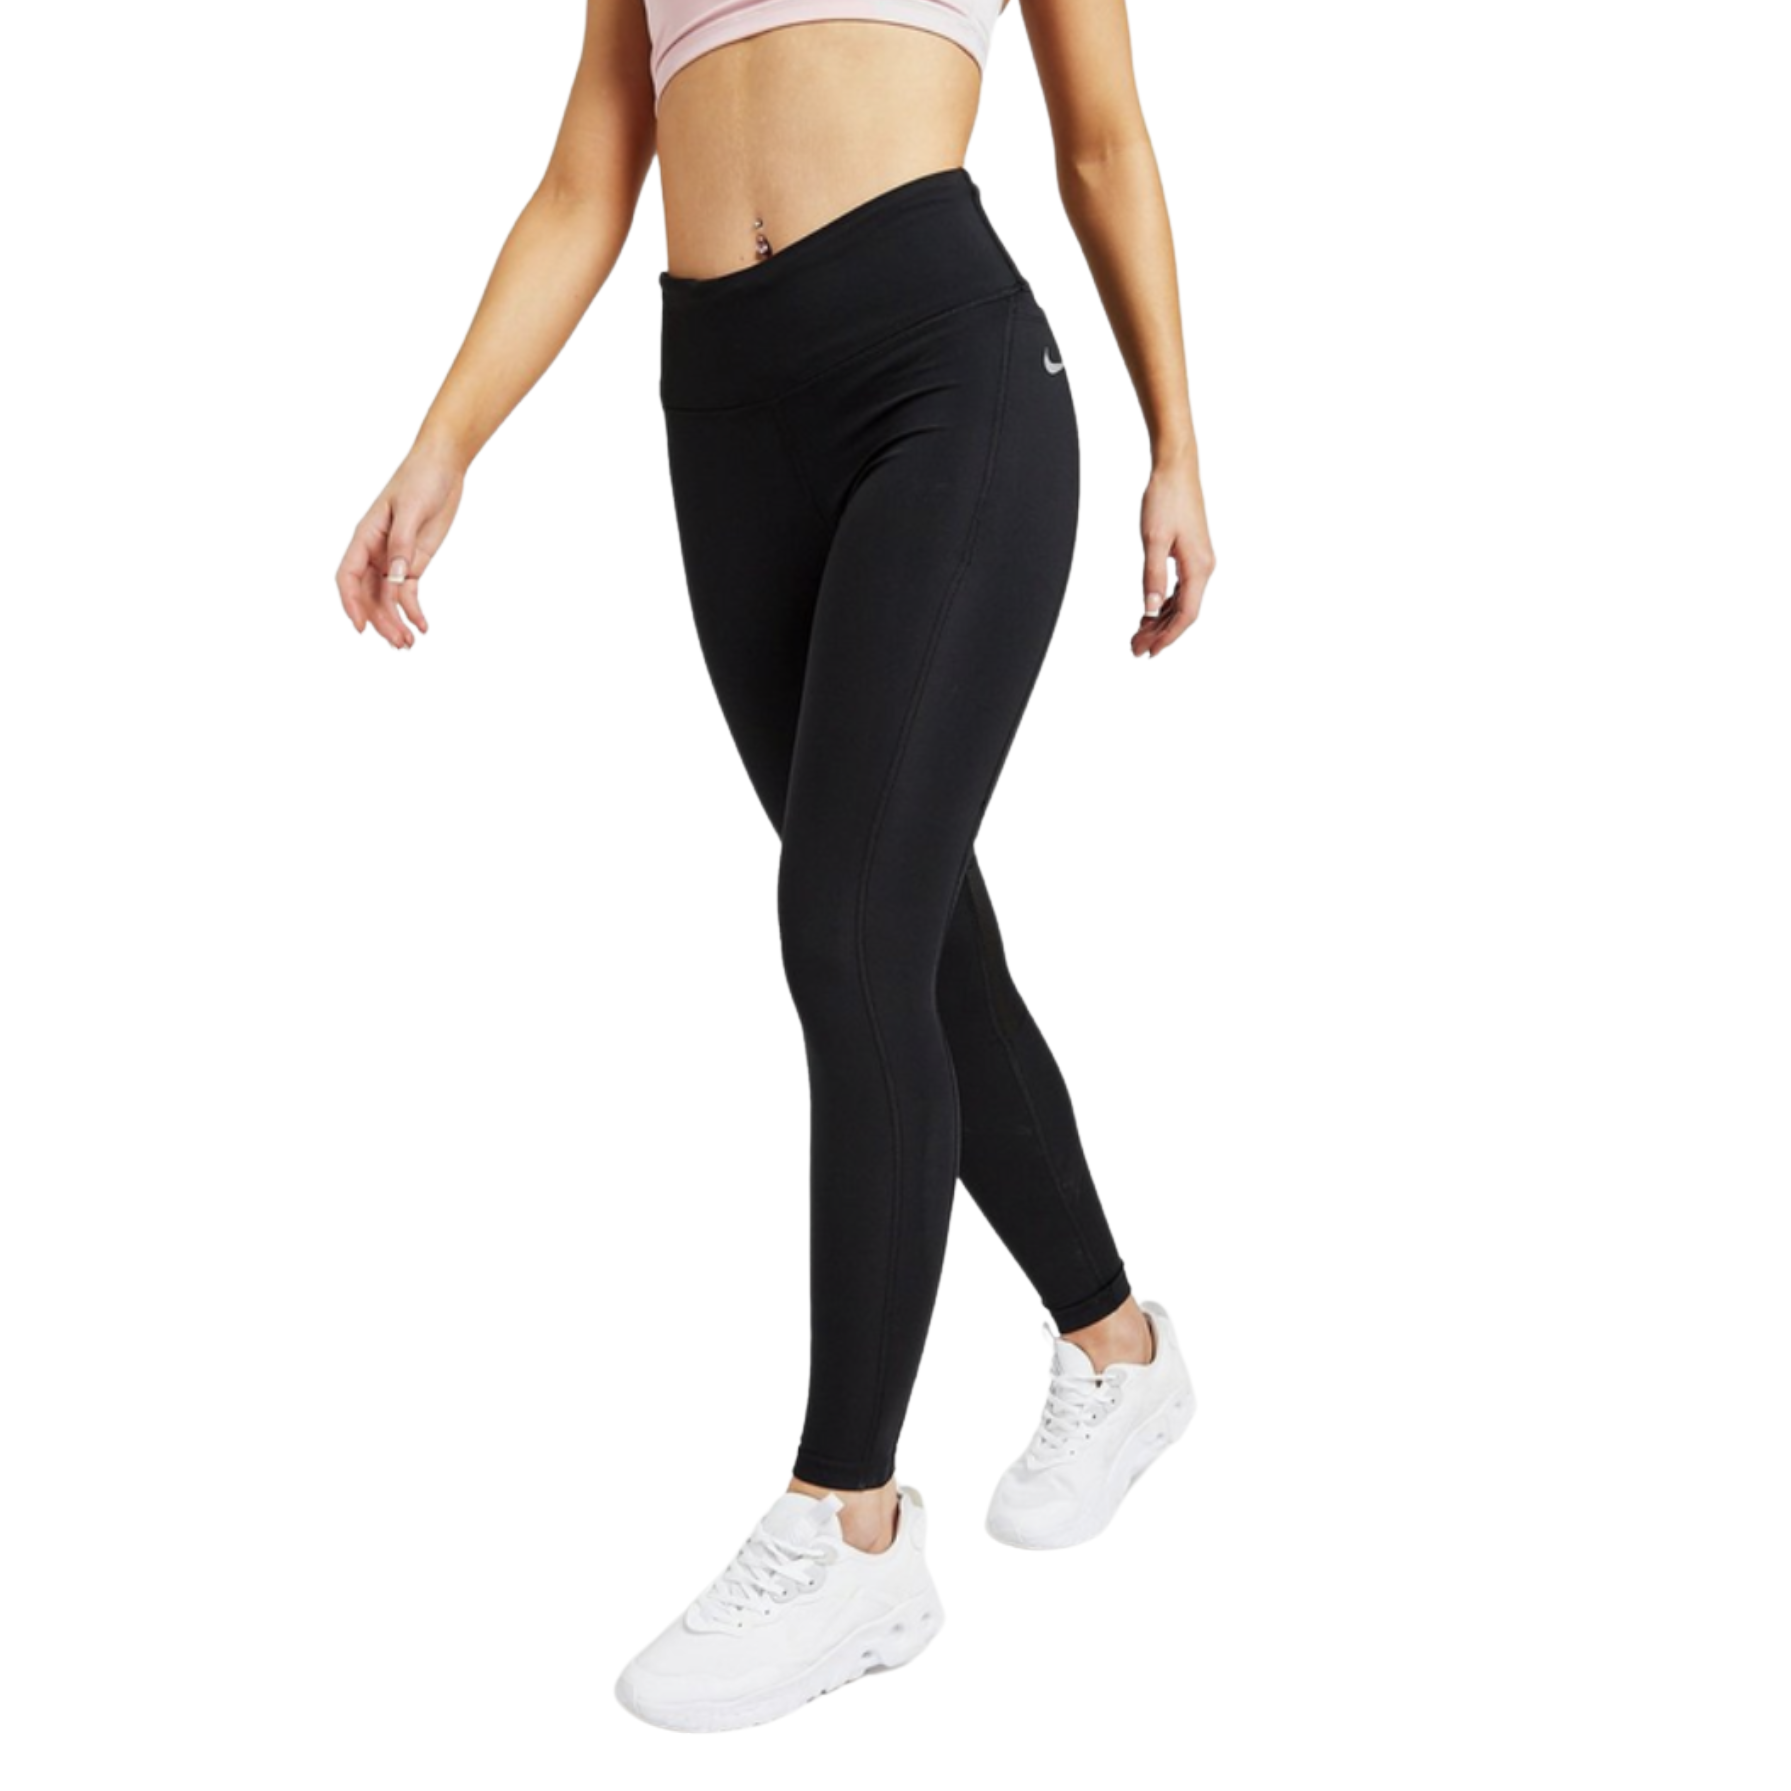 Nike, Pants & Jumpsuits, Nike Black Drifit Epic Run Running Tights  Leggings Mesh Back Size Xs